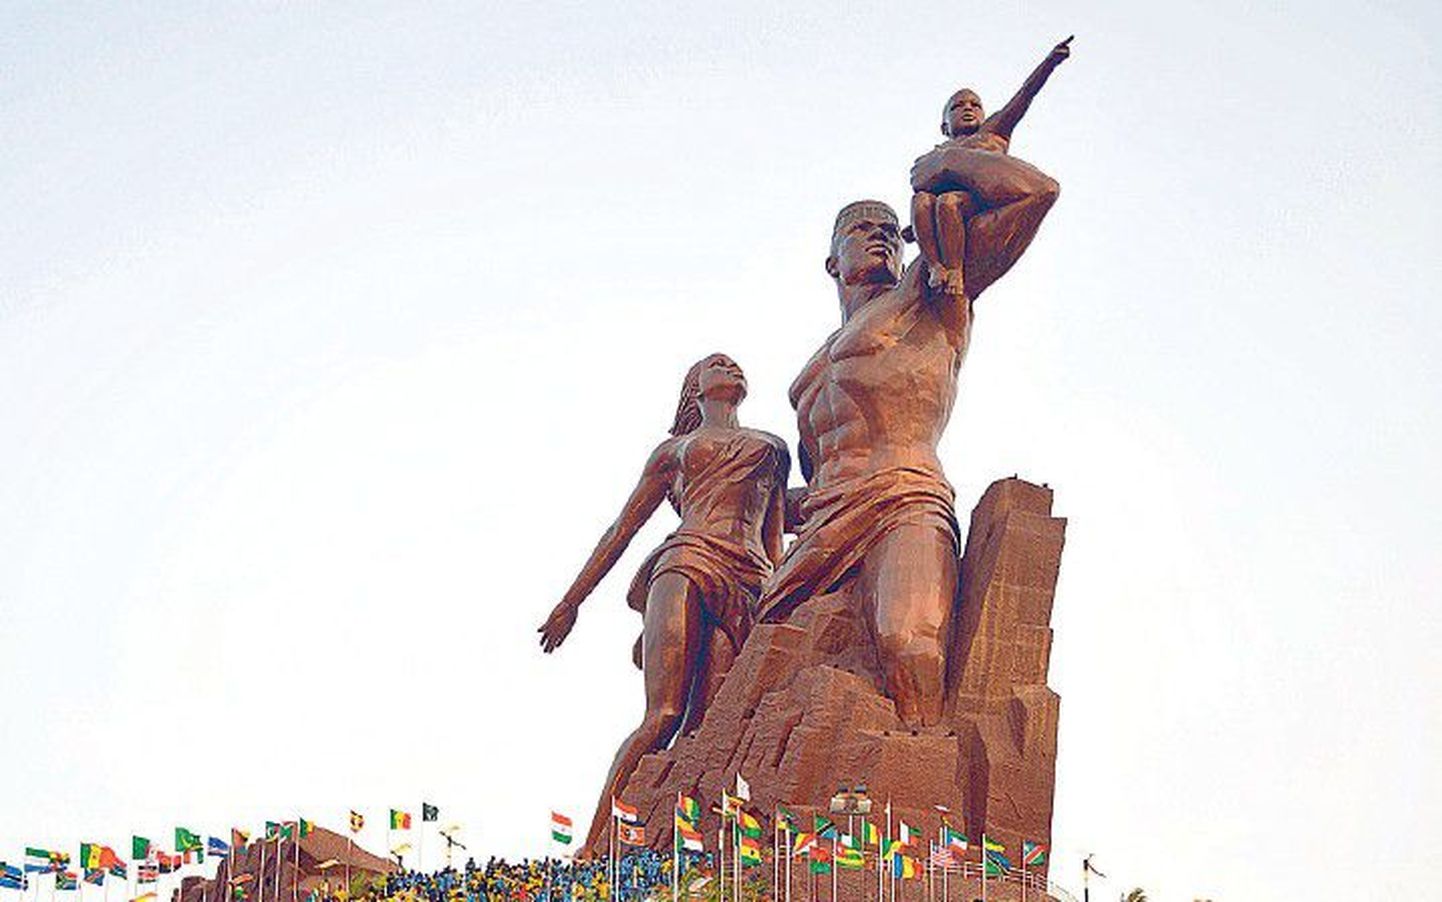 На фото изображен не Советский Союз в 1950 году, а Сенегал в 2010 году. Так выглядит монумент « Африканский ренессанс».